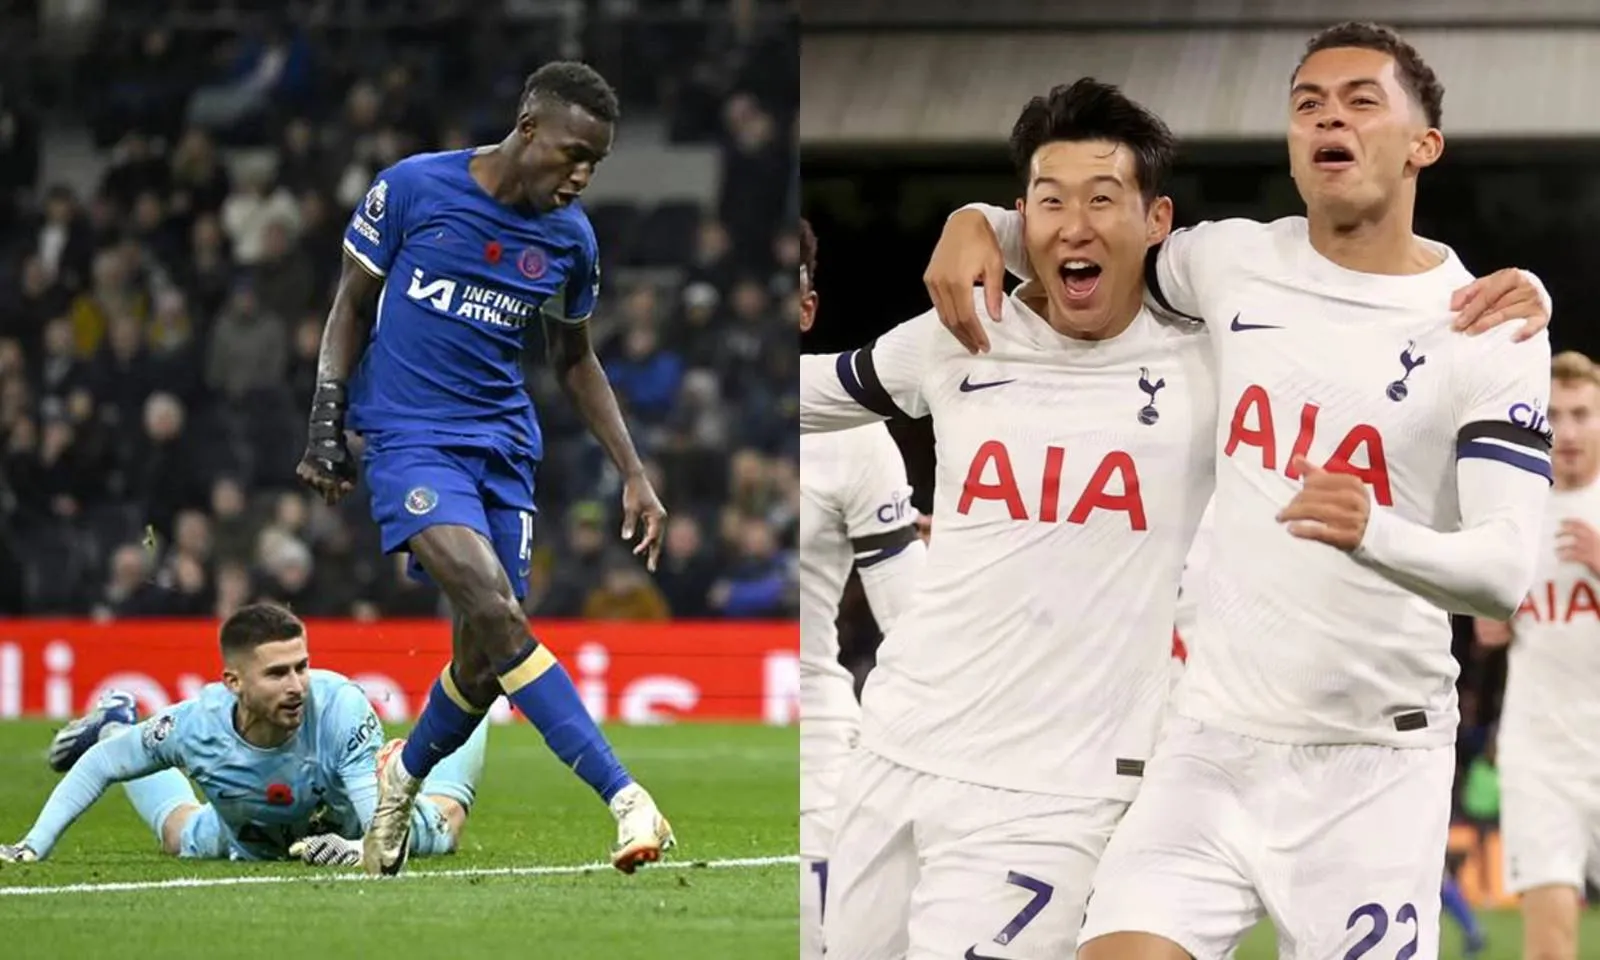 Lịch thi đấu Chelsea vs Tottenham tuần này (1h30 ngày 3/5), xem trực tiếp ở đâu - Kênh nào?